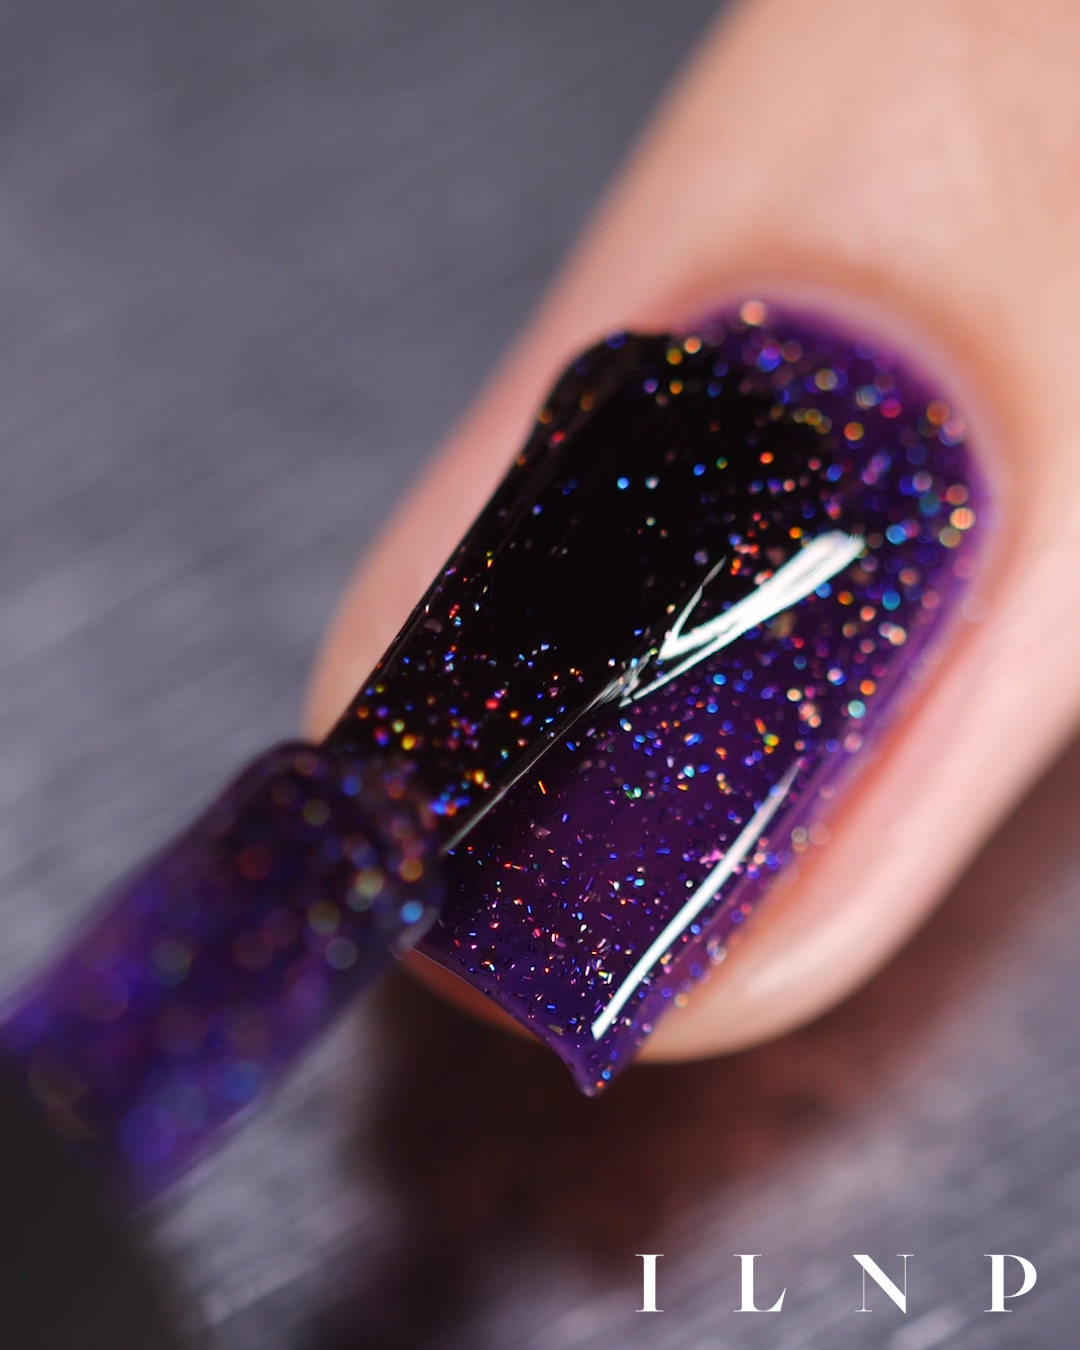 14 beauty nails ideas